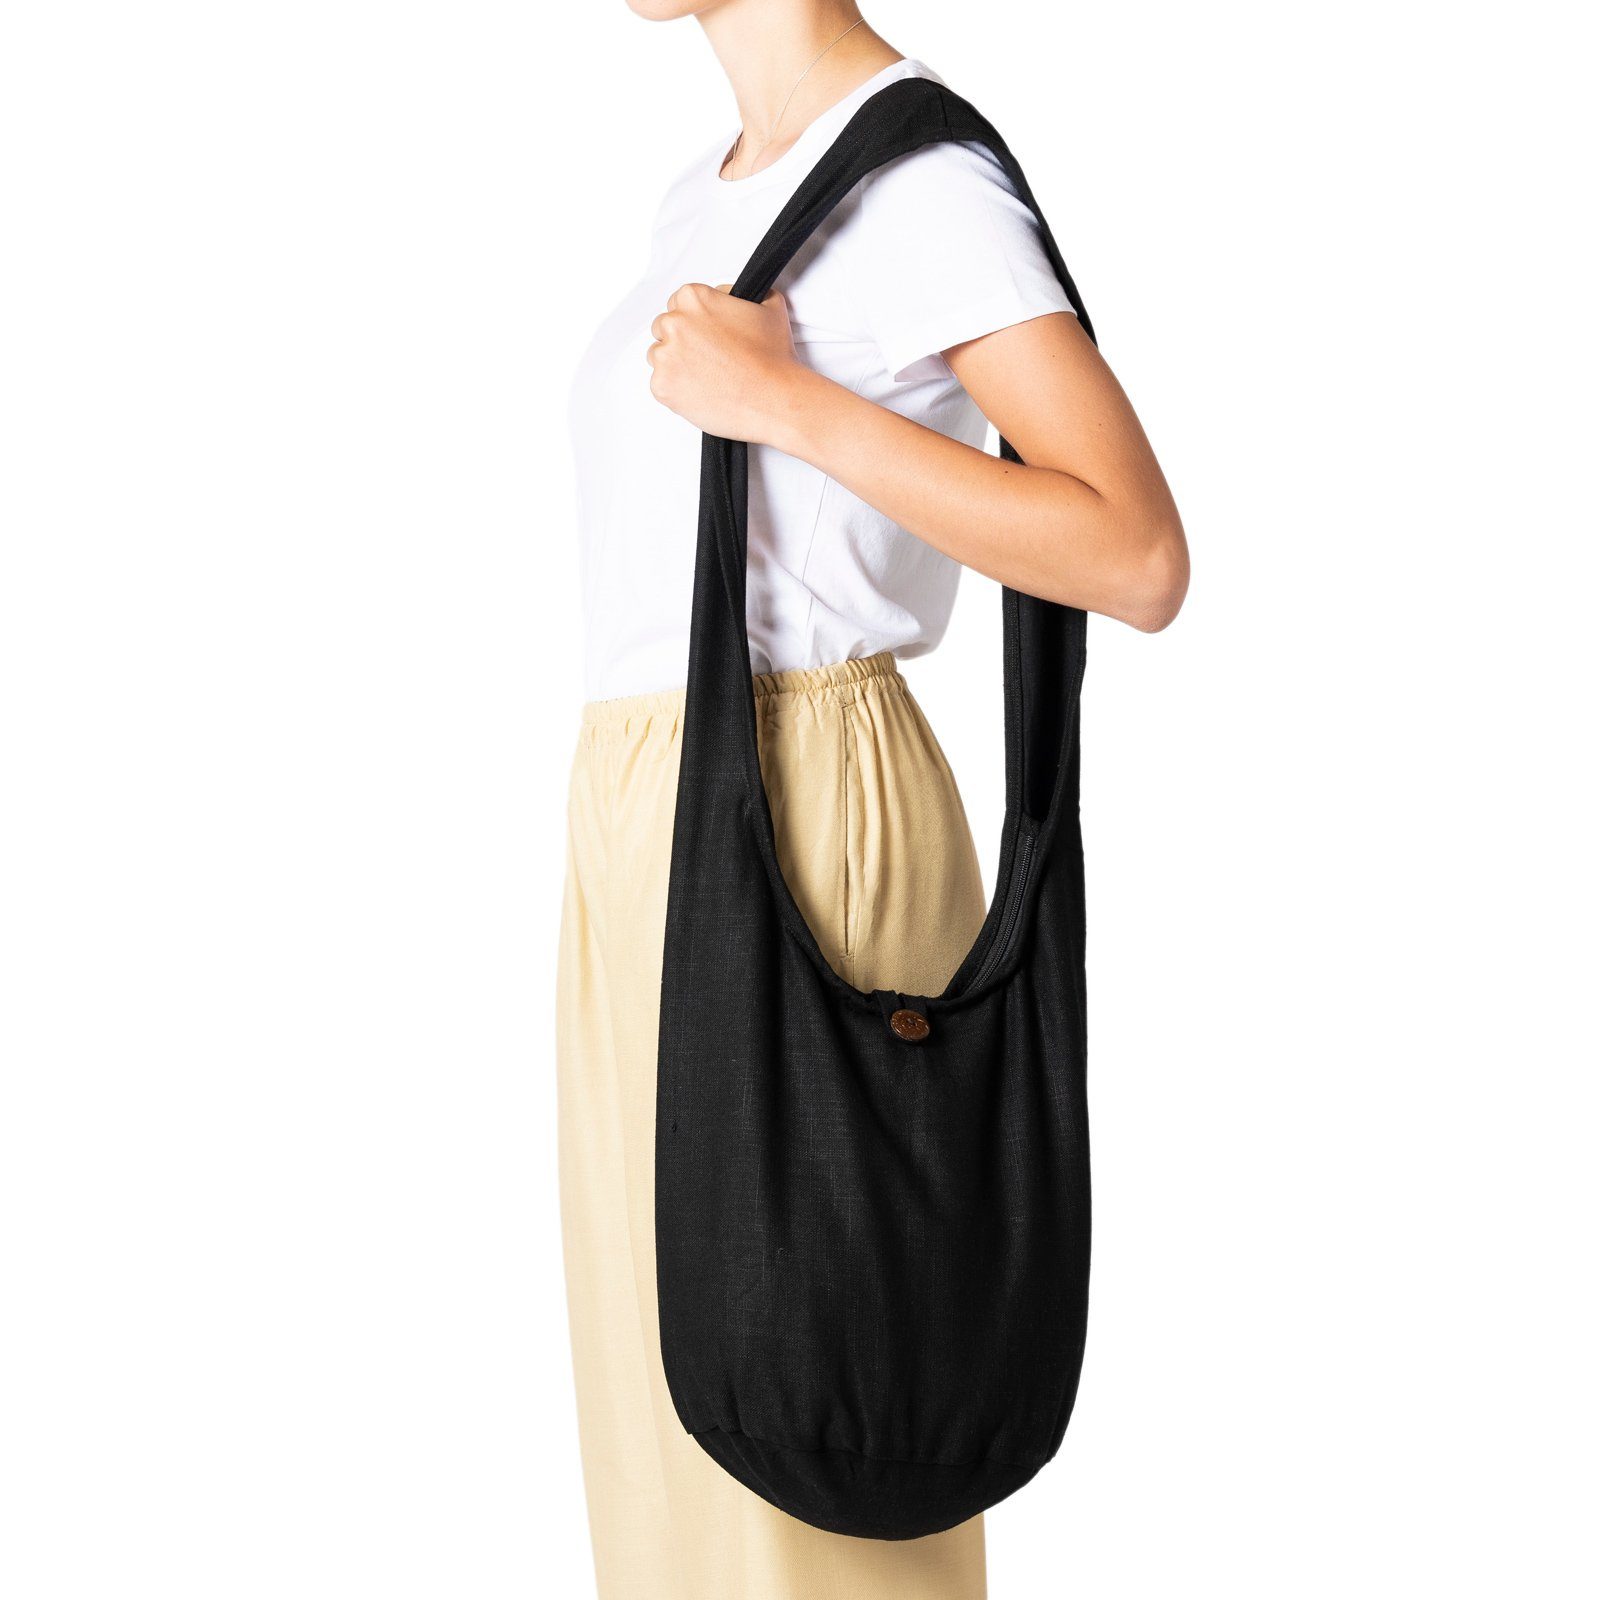 PANASIAM Yogatasche Schulterbeutel einfarbig Schultertasche aus Hanf in 2 Größen, Umhängetasche auch als Wickeltasche Handtasche oder Strandtasche Schwarz